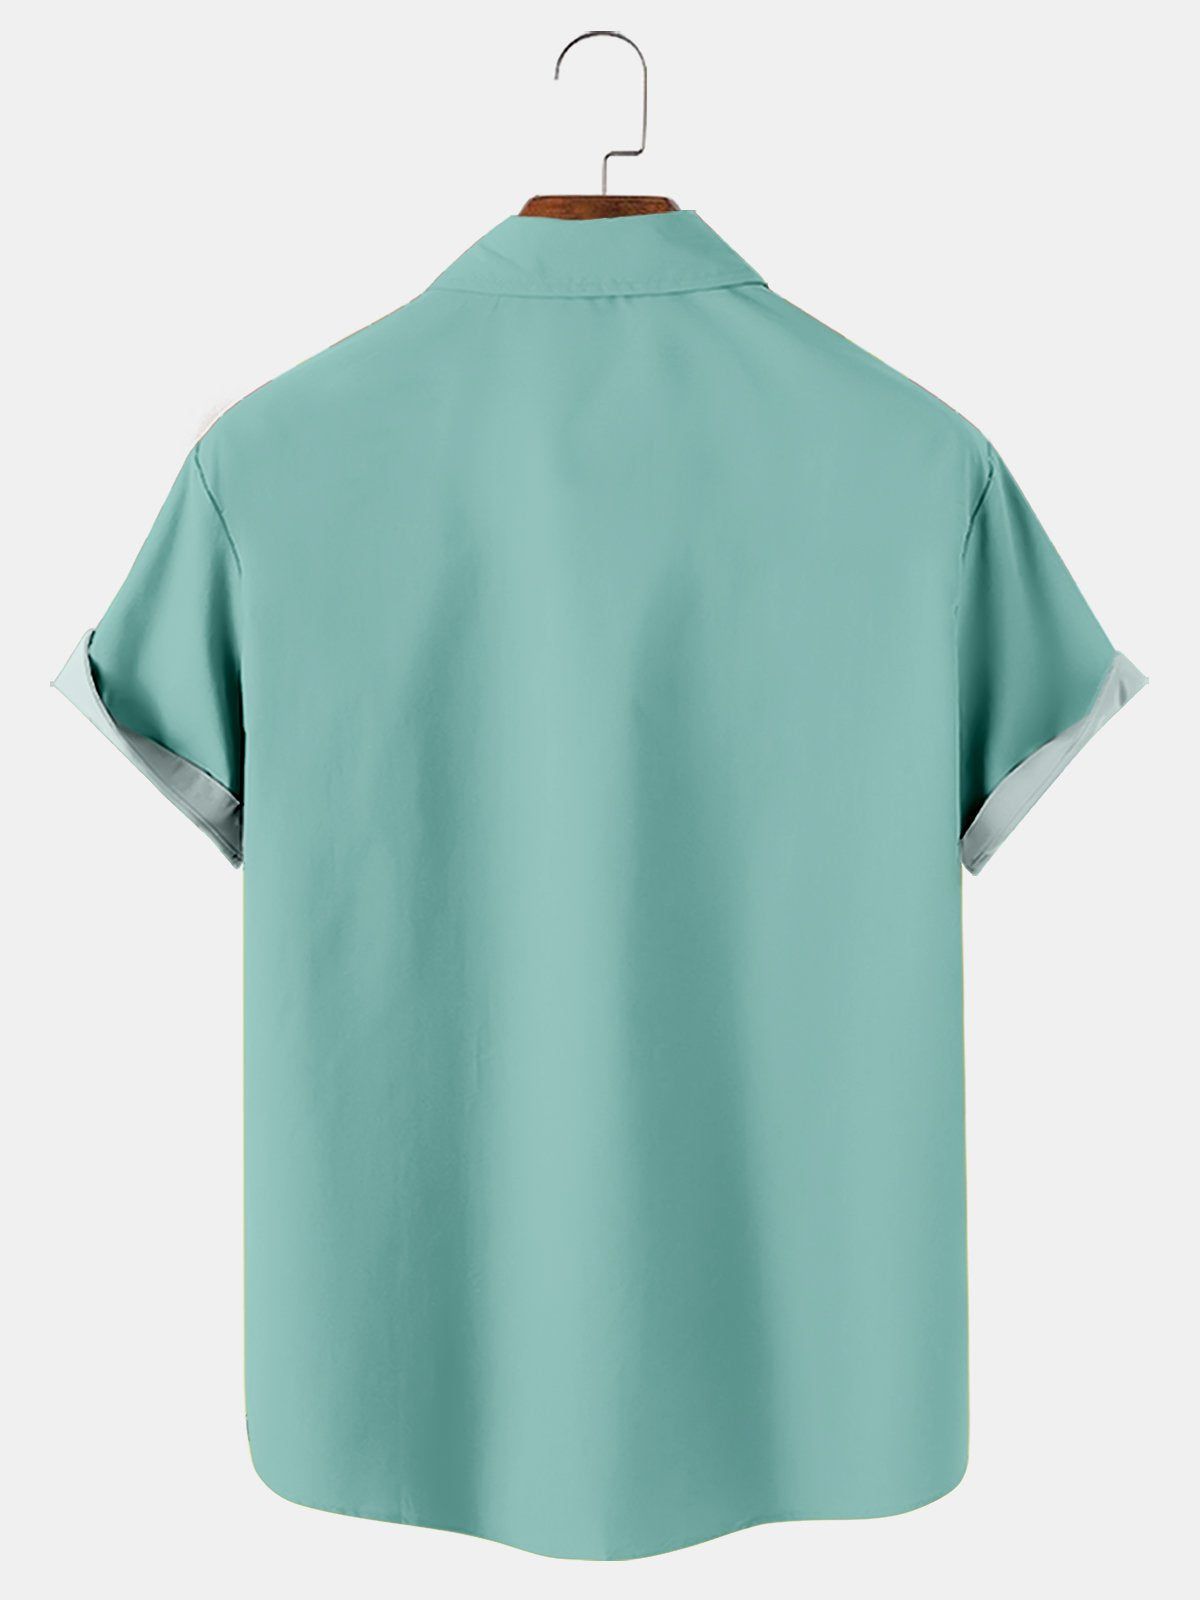 Simple Gradient Printed Short Sleeve Shirt